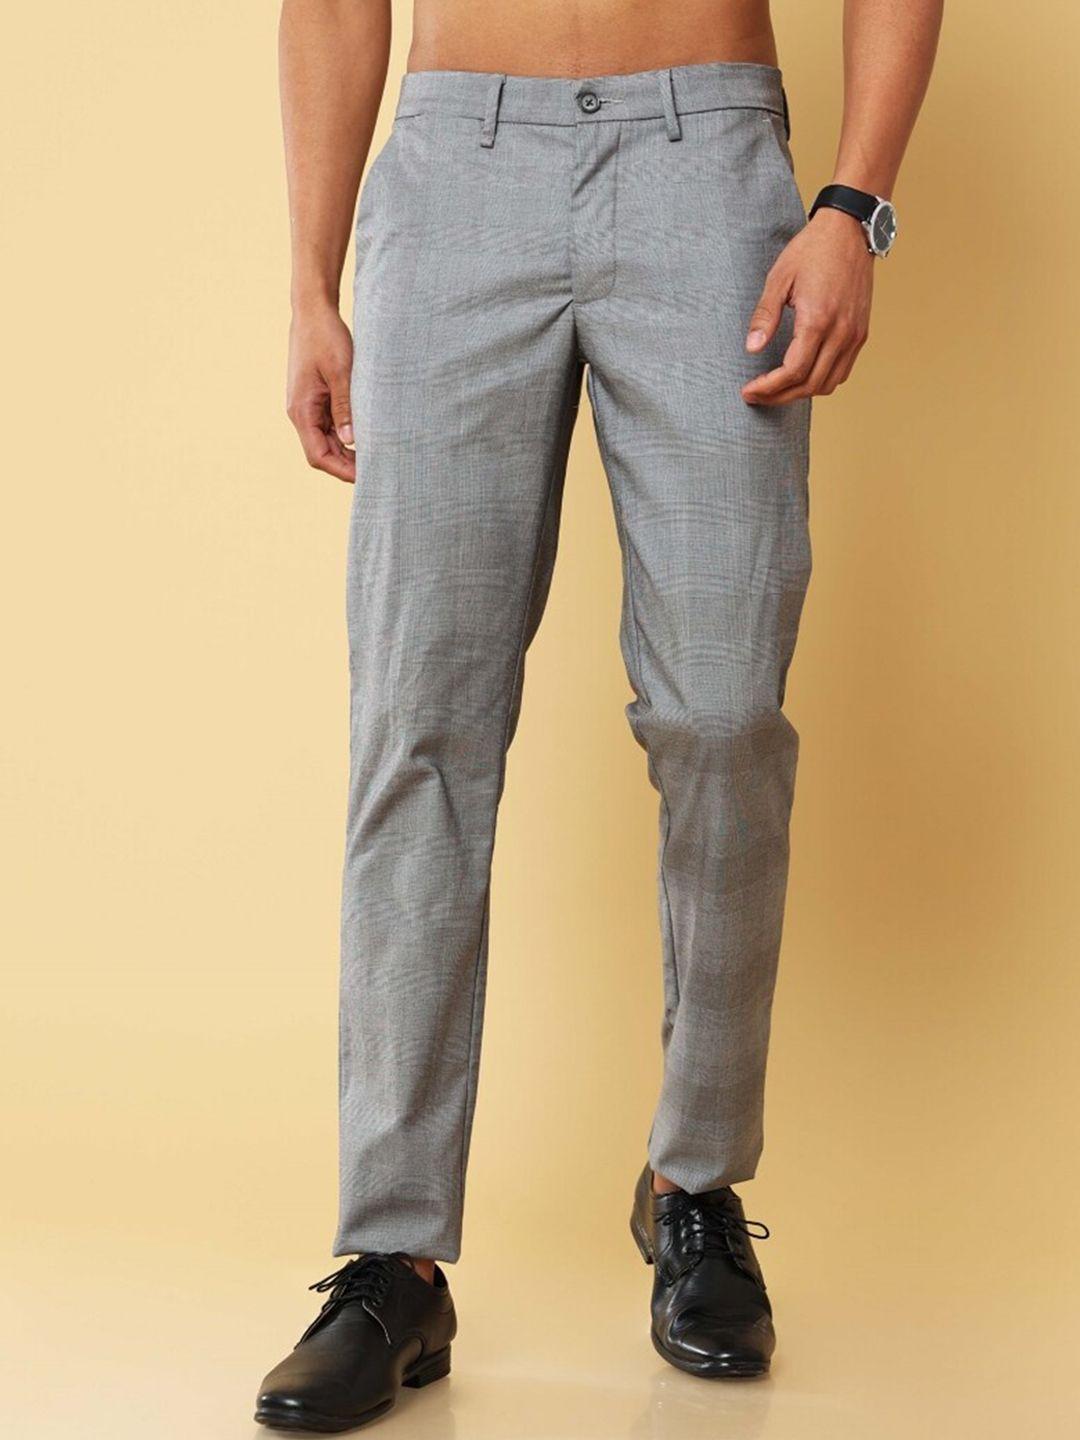 melvin jones men comfort mid-rise regular trouser